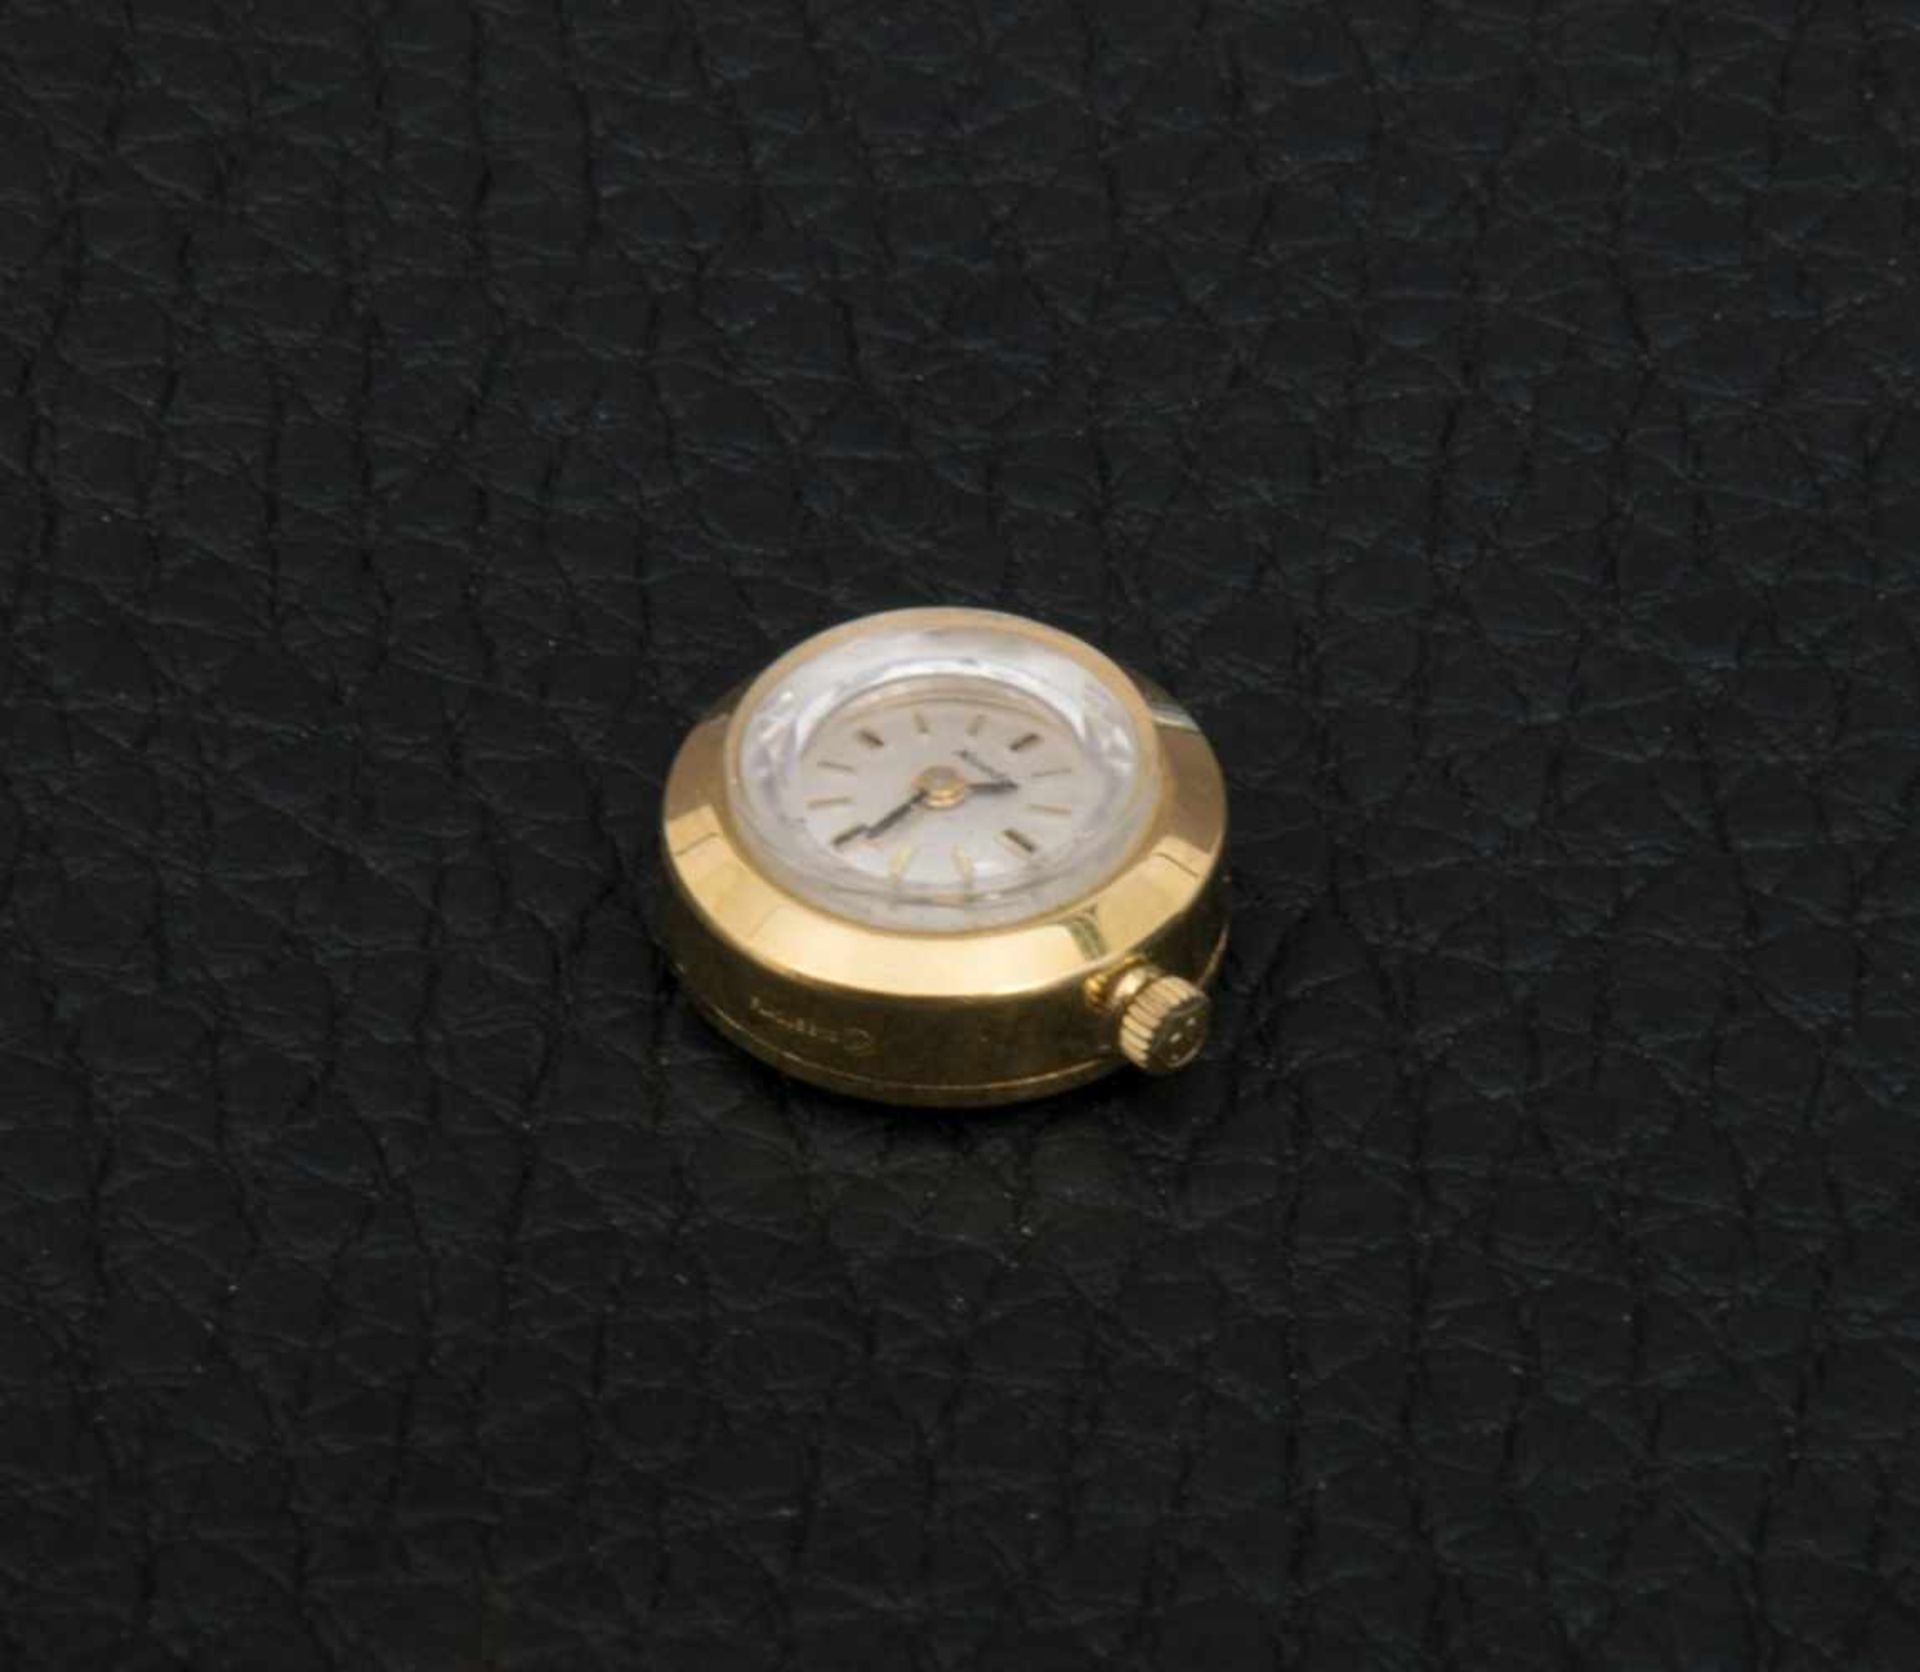 NIVADA "COLORAMA" Damenarmbanduhr der 1960er/70er Jahre, 2(!!!) vergoldete Damenuhren mit - Bild 4 aus 8